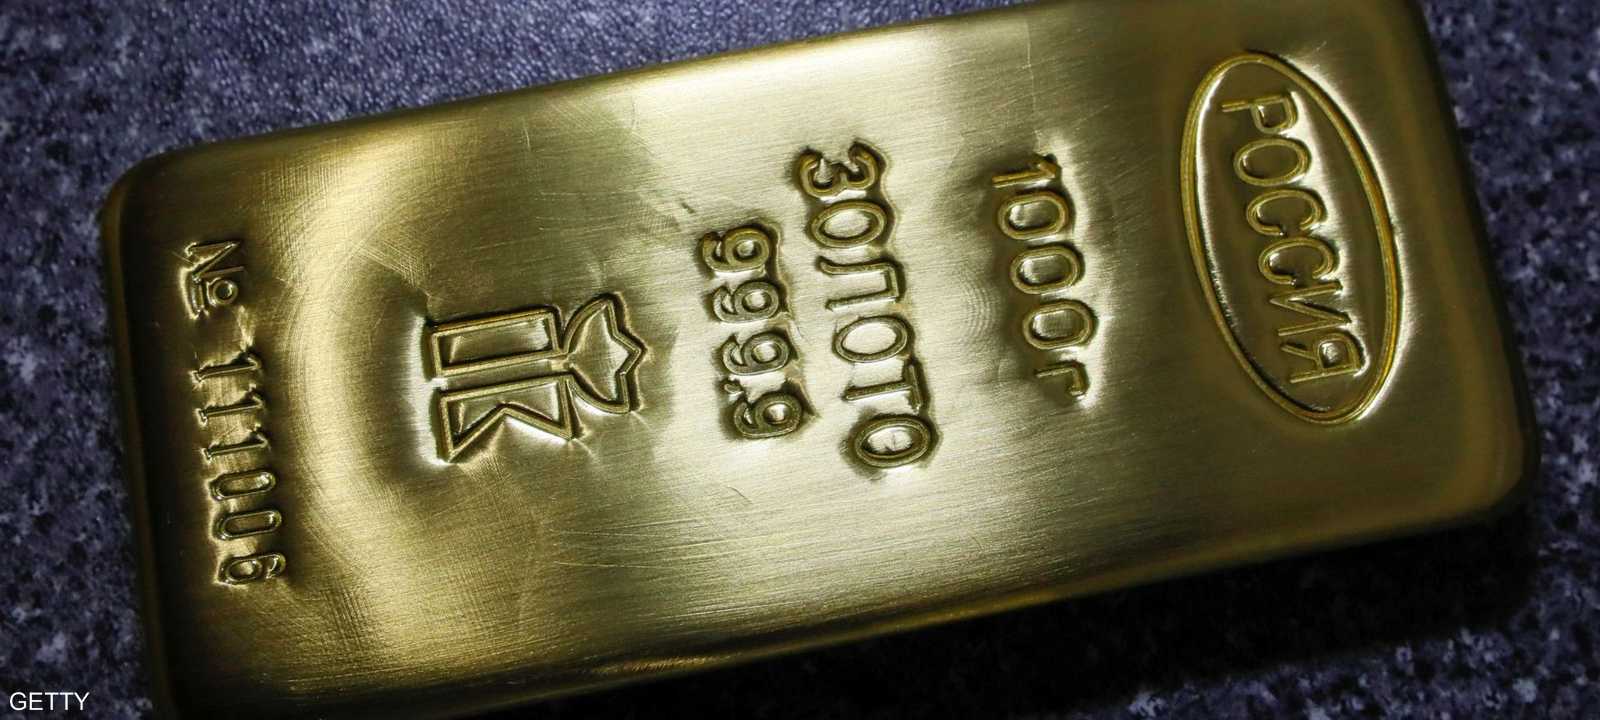 الذهب يصعد مع حالة عدم الاستقرار في آفاق اقتصاد العالم